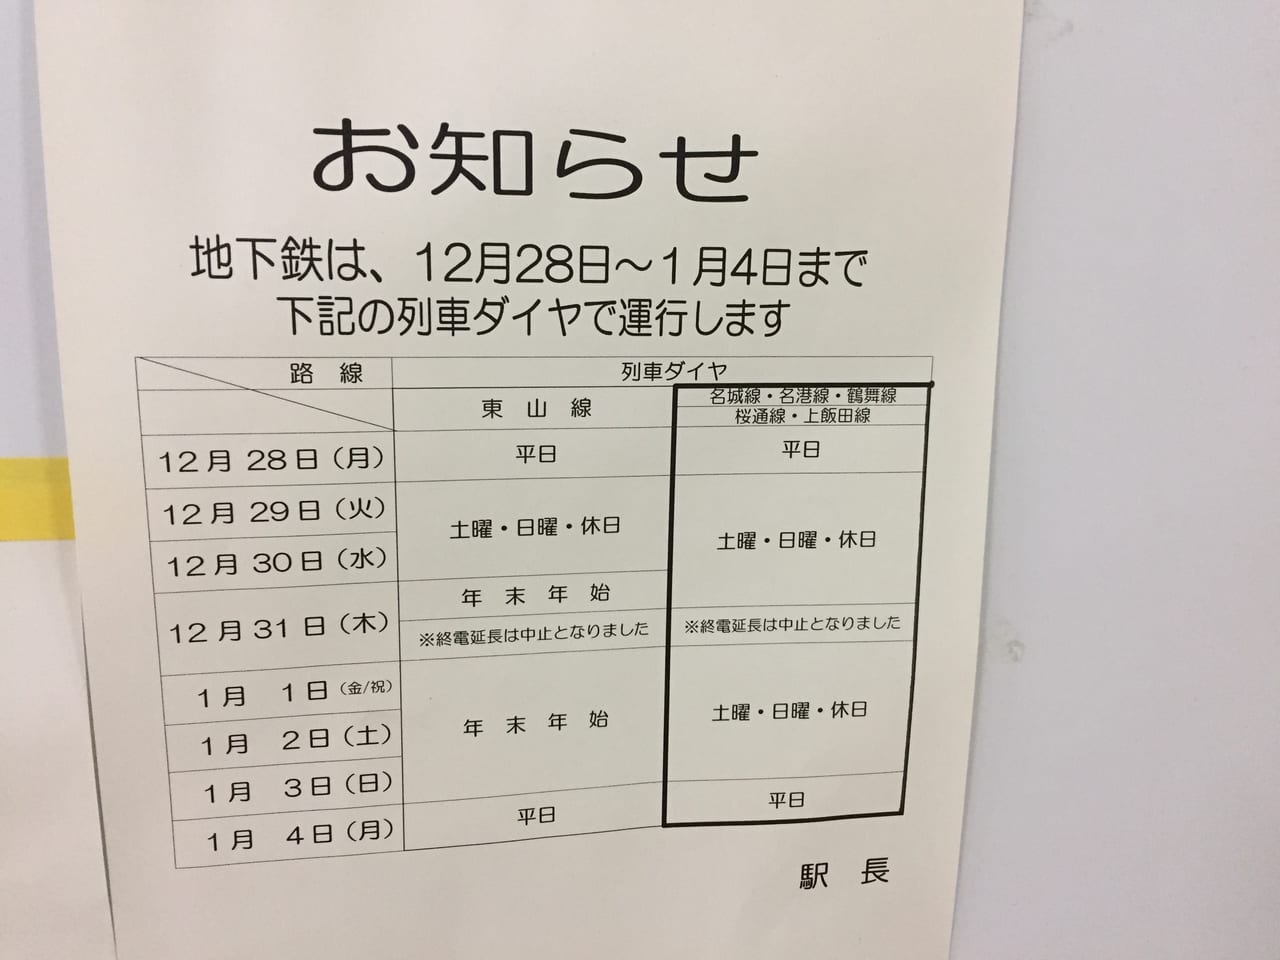 名古屋市営地下鉄年末年始運行ダイヤについてのお知らせ②